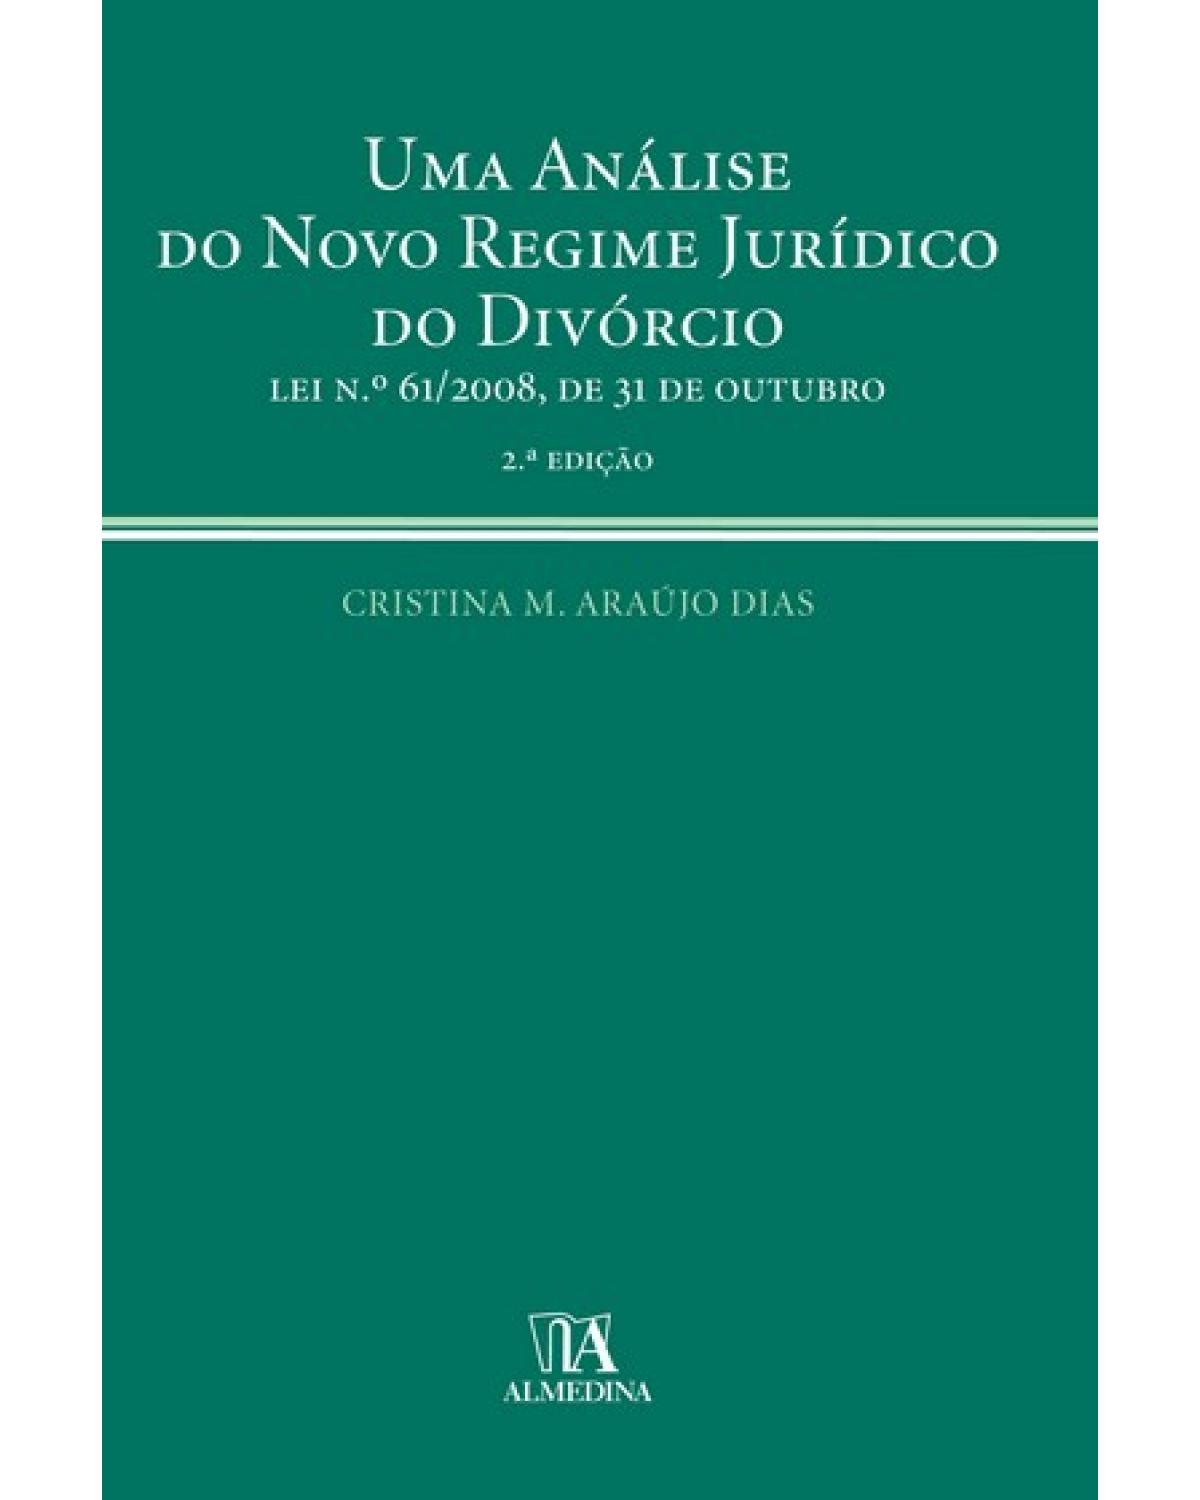 Uma análise do novo regime jurídico do divórcio - lei nº 61/2008, de 31 de outubro - 2ª Edição | 2009